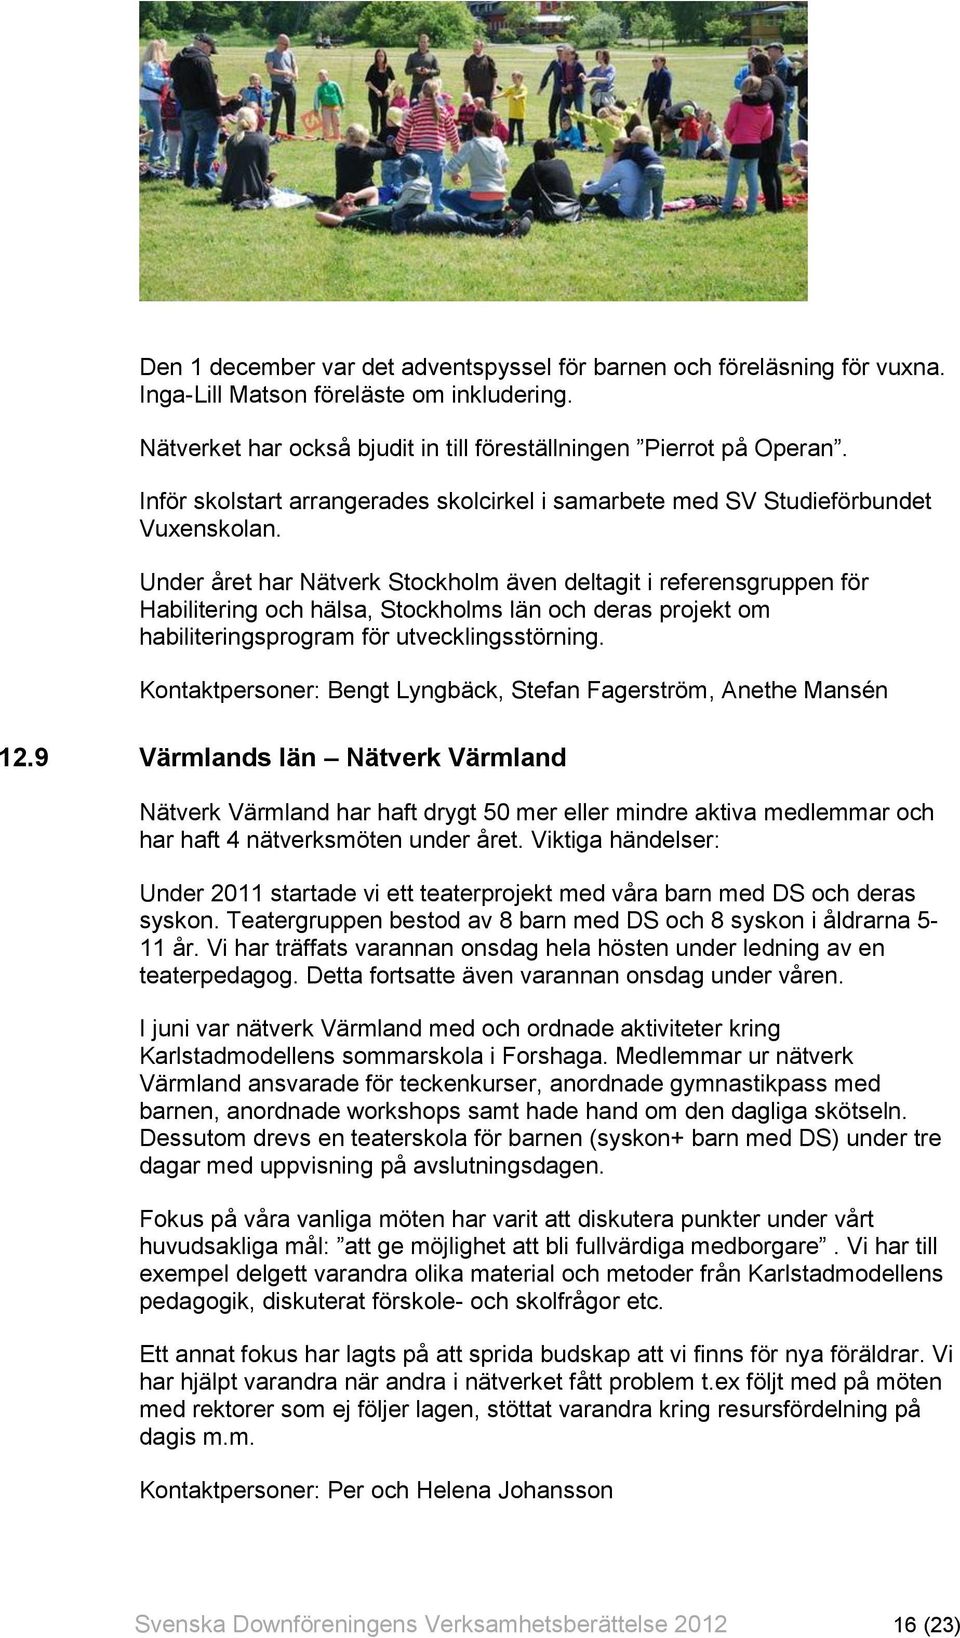 Under året har Nätverk Stockholm även deltagit i referensgruppen för Habilitering och hälsa, Stockholms län och deras projekt om habiliteringsprogram för utvecklingsstörning.